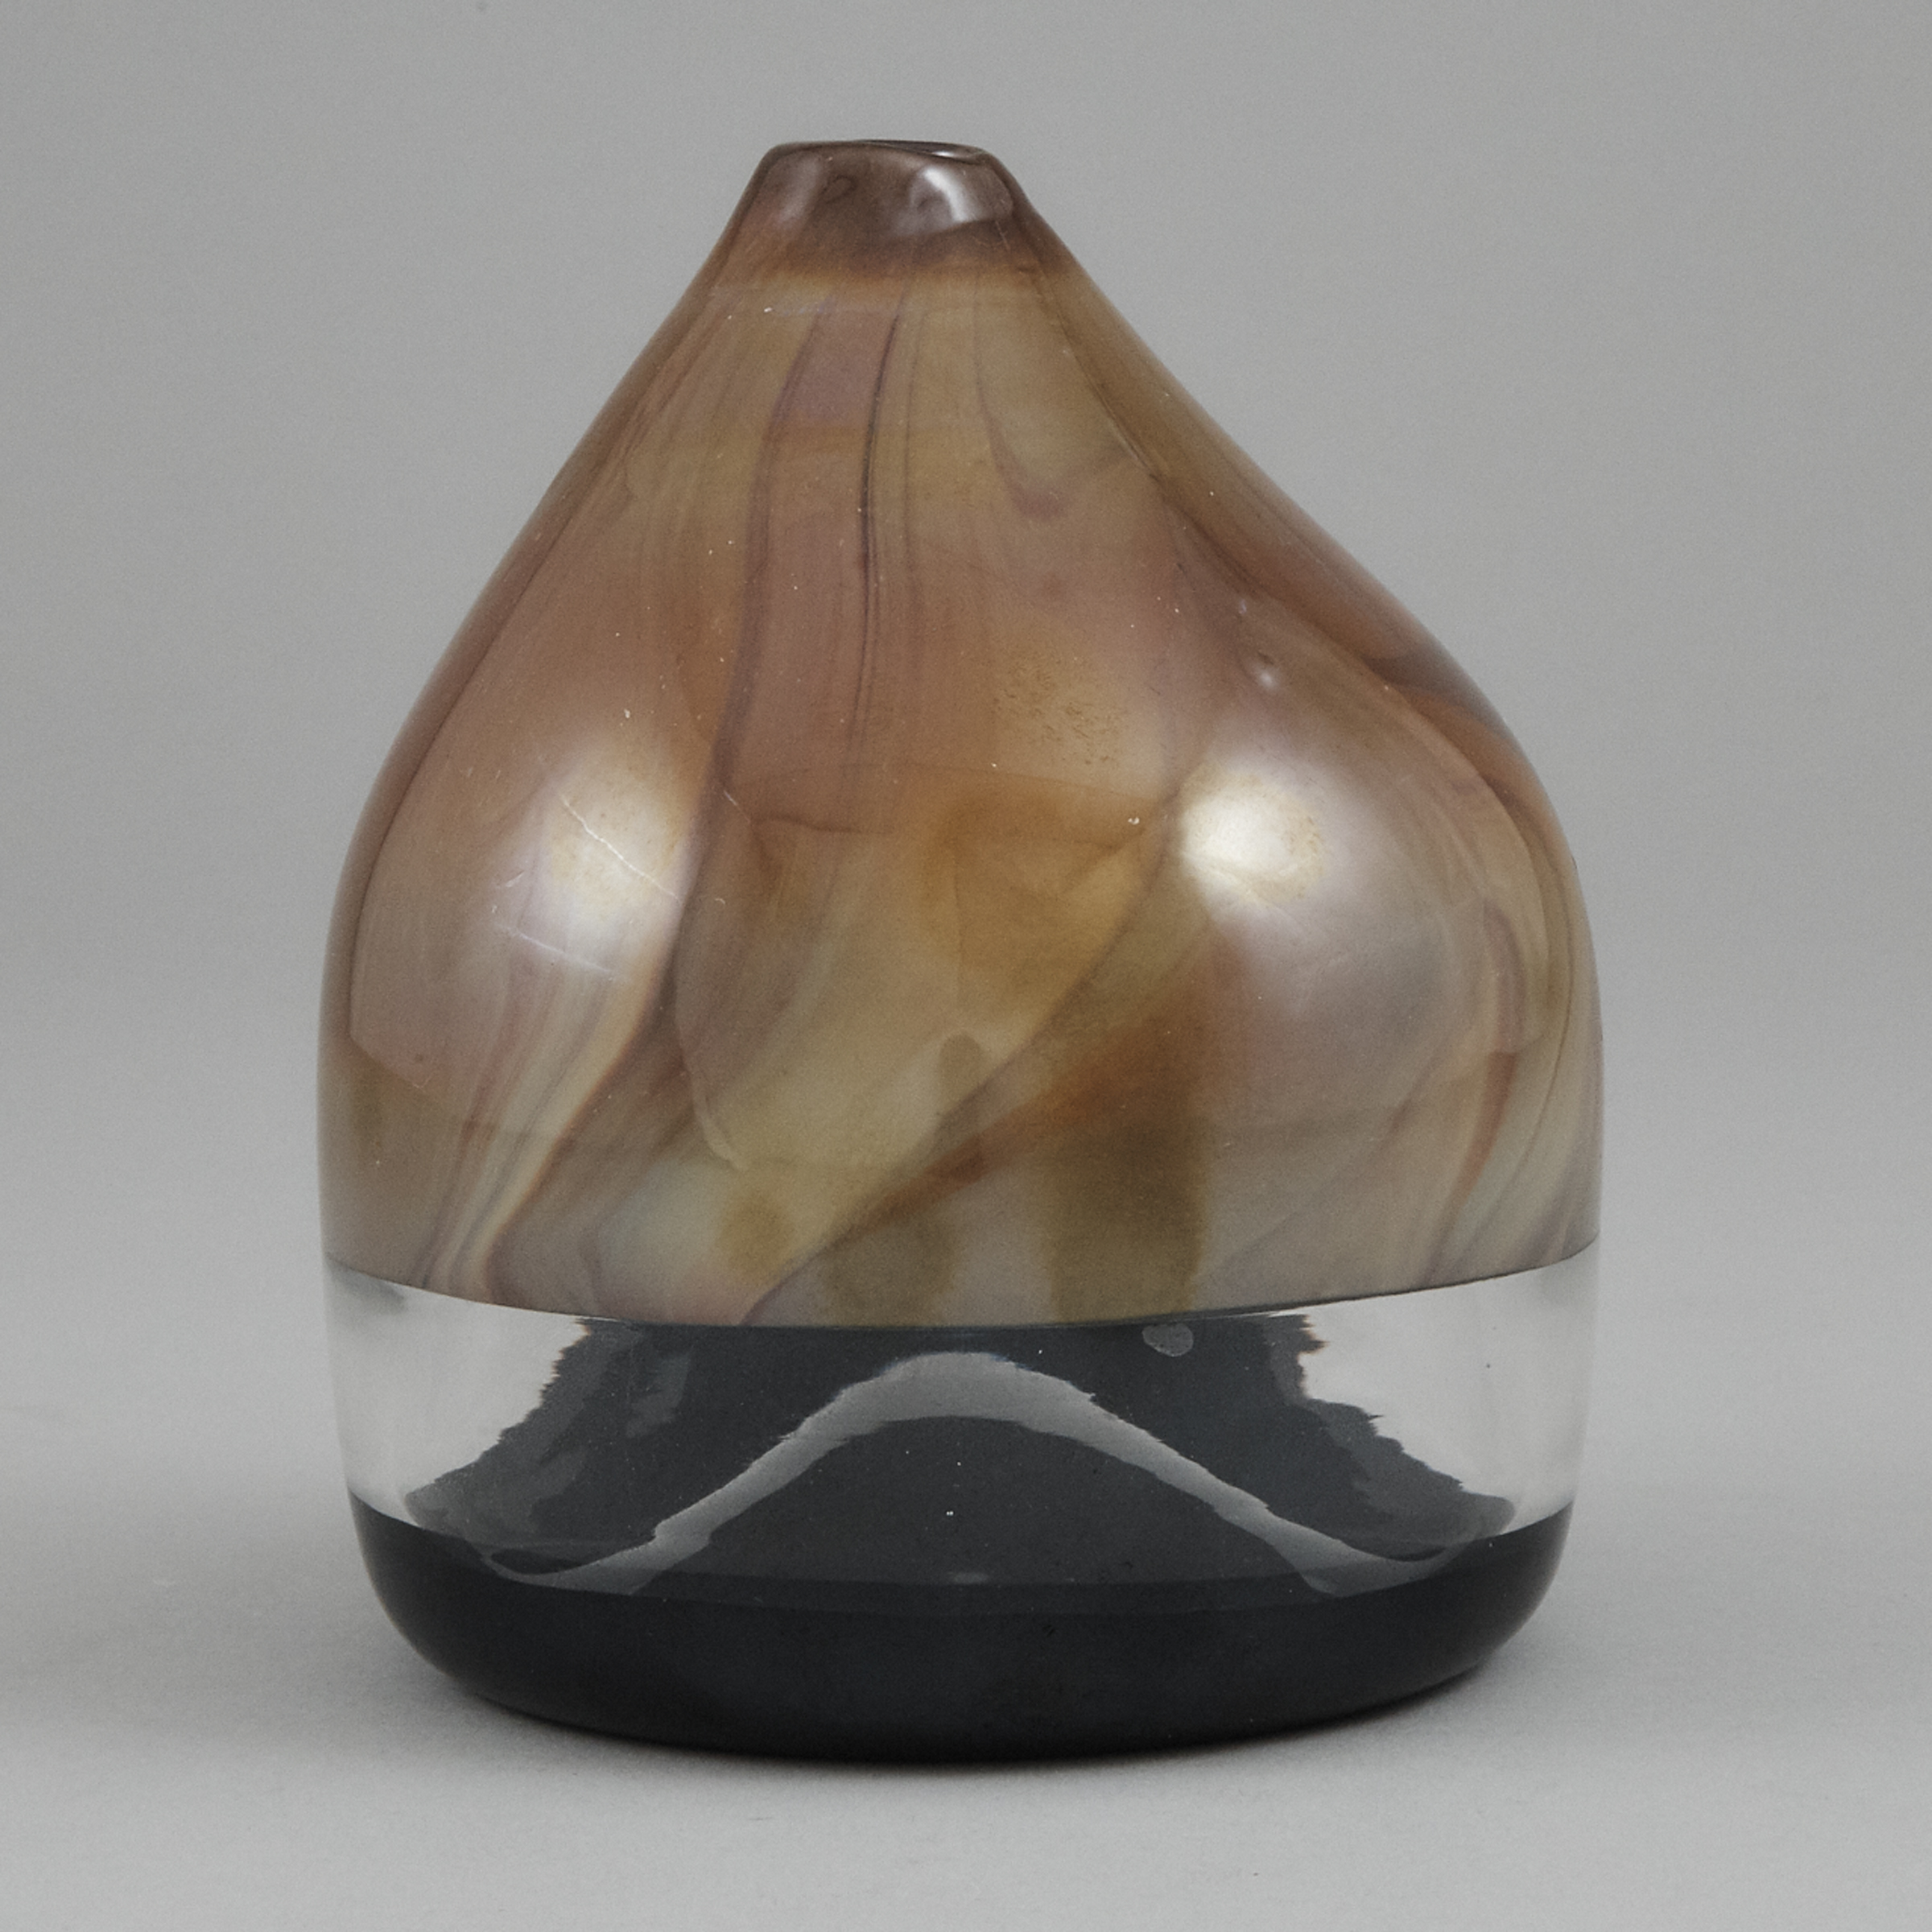 'Cappello del Doge' Incalmo Glass Vase, attributed to Venini and Thomas Stearns, c.1962